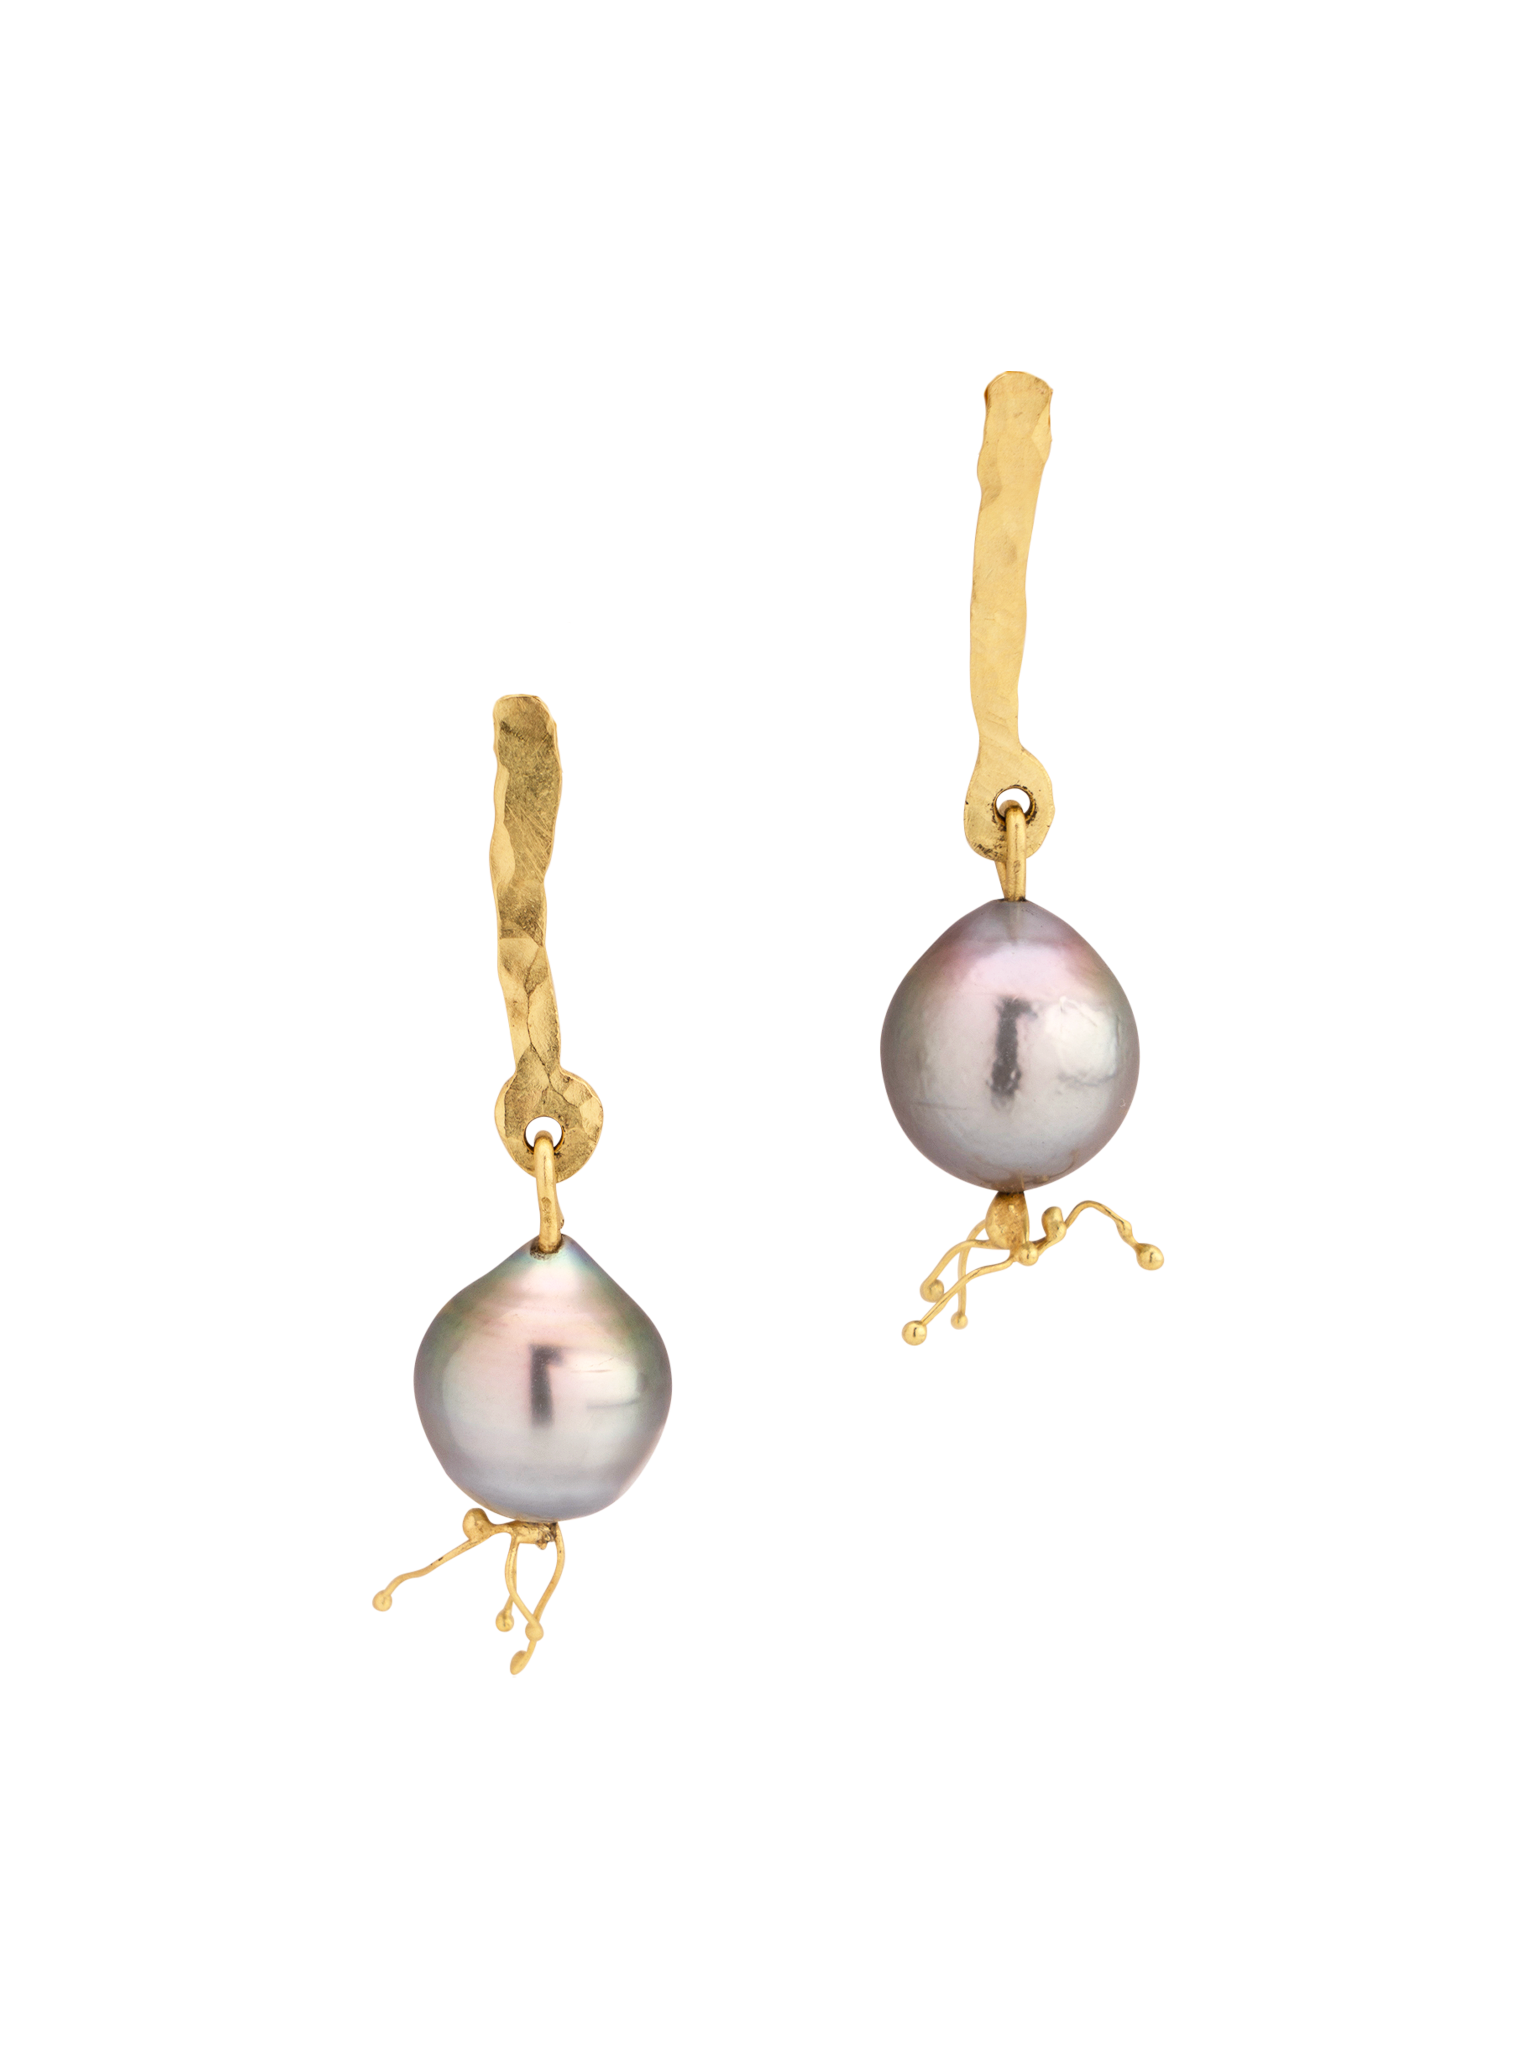 Ondine black pearls earrings